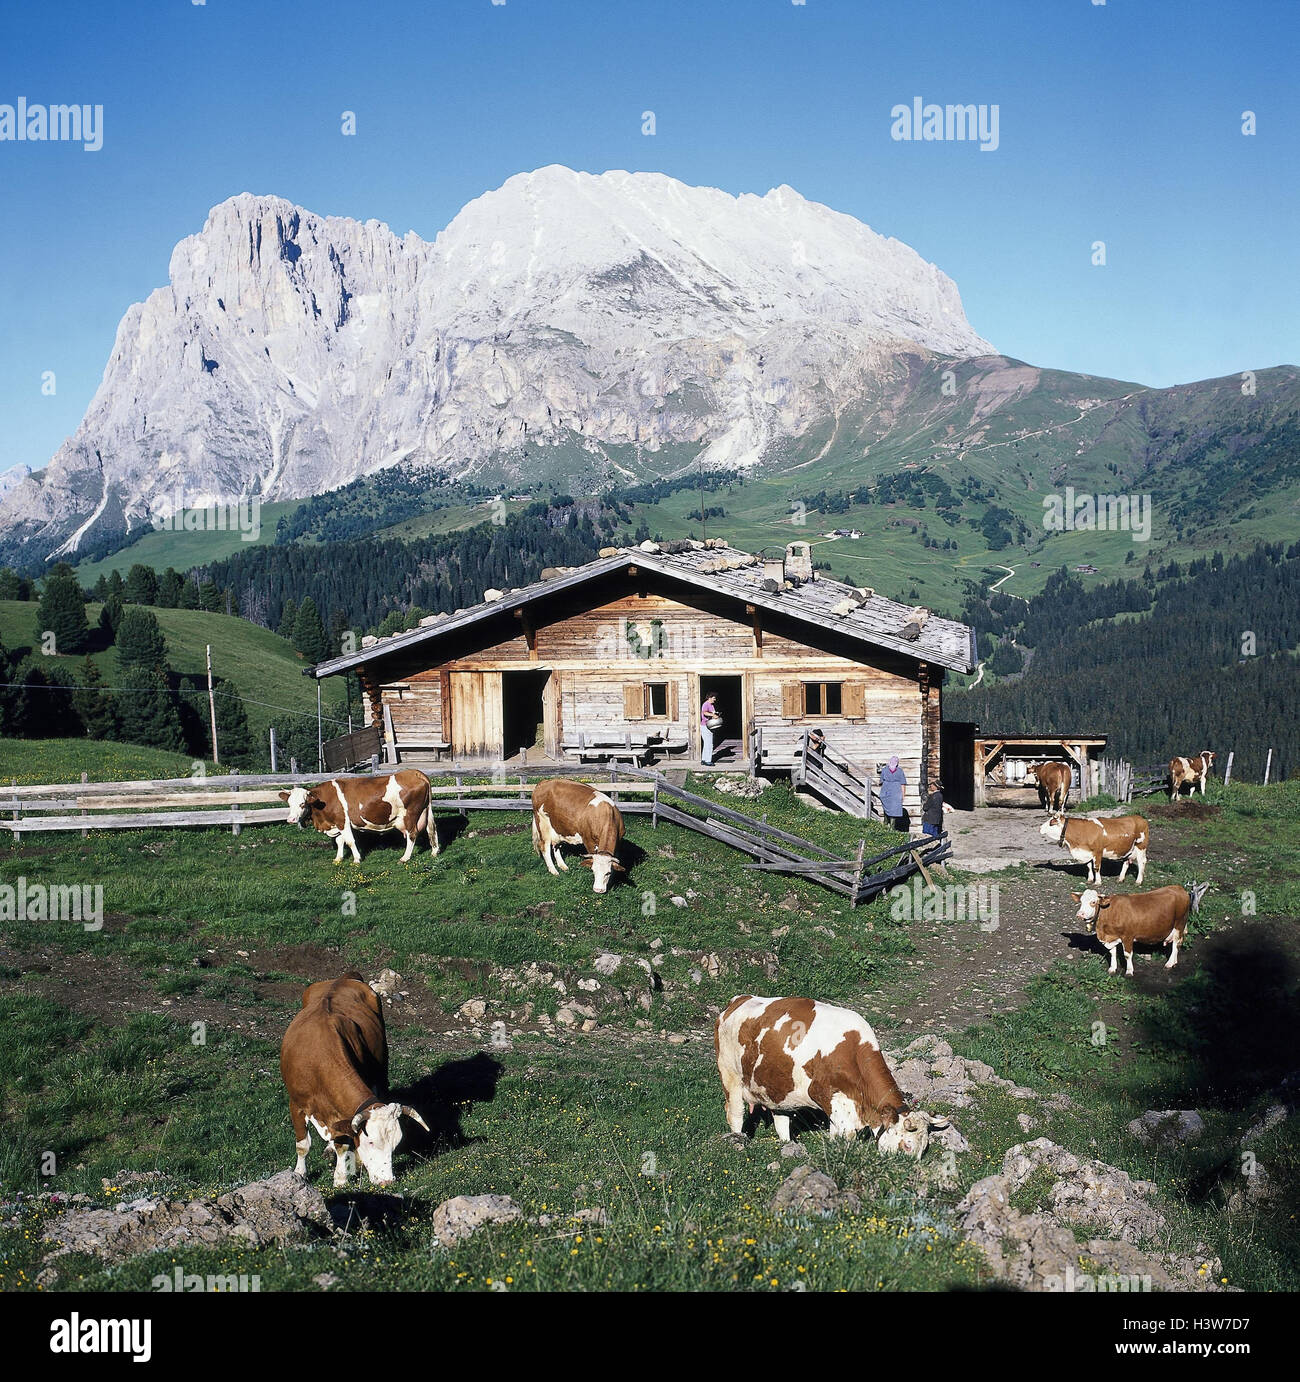 Le Tyrol du Sud, 'Pseier' alpage, ALP, vaches paysage, paysage de montagnes, montagnes, montagne, alpages, alpine hut, hut, cattles, broutent, Idyll Banque D'Images